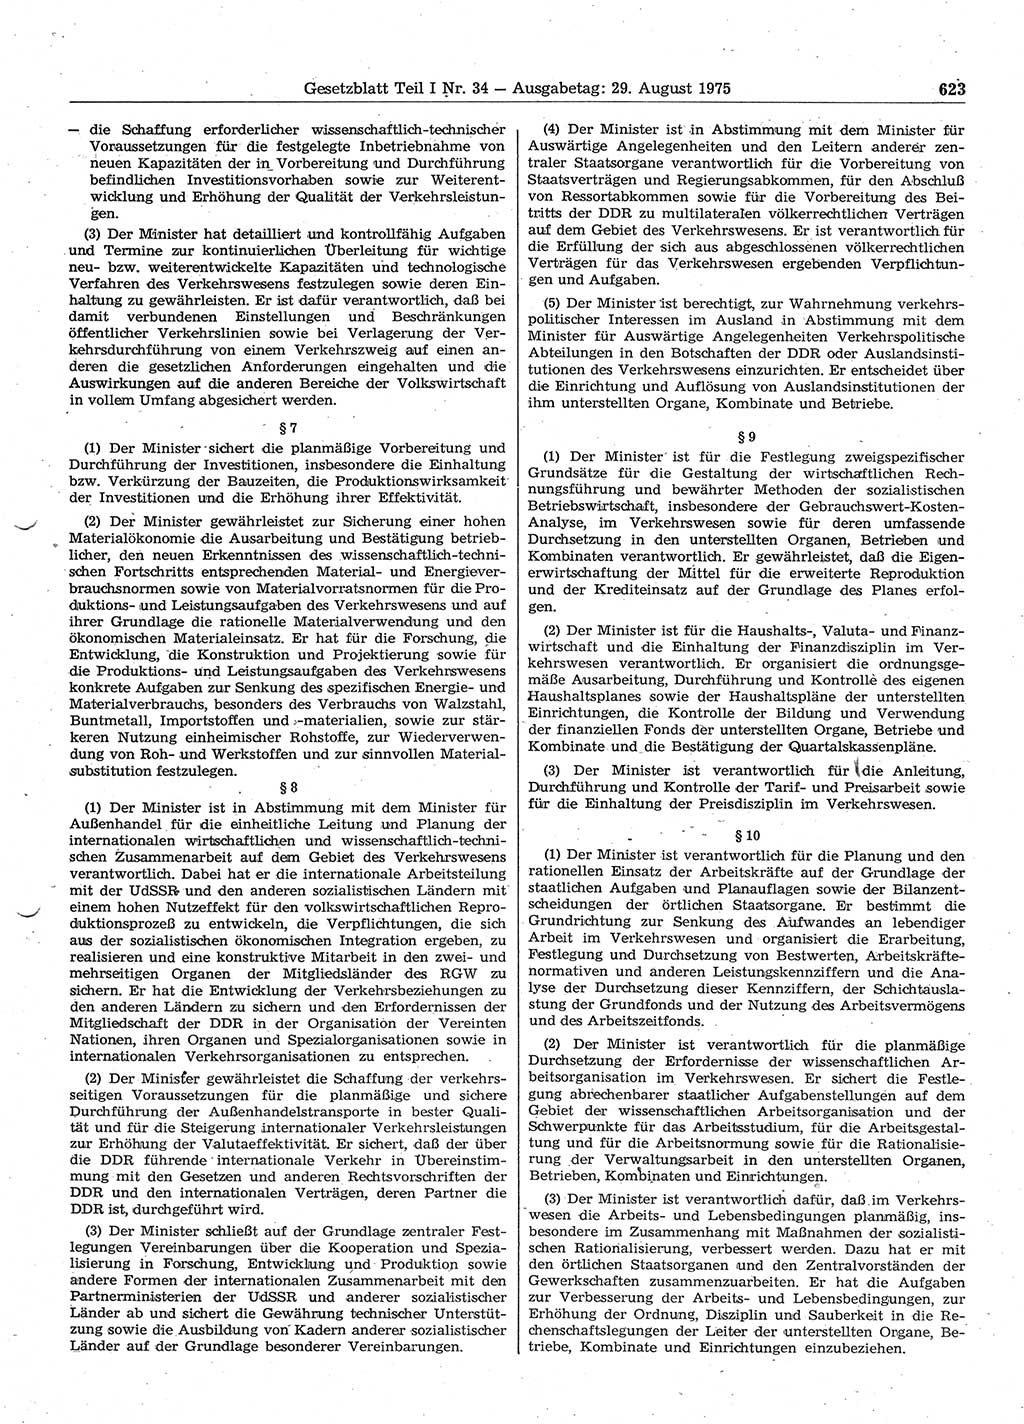 Gesetzblatt (GBl.) der Deutschen Demokratischen Republik (DDR) Teil Ⅰ 1975, Seite 623 (GBl. DDR Ⅰ 1975, S. 623)